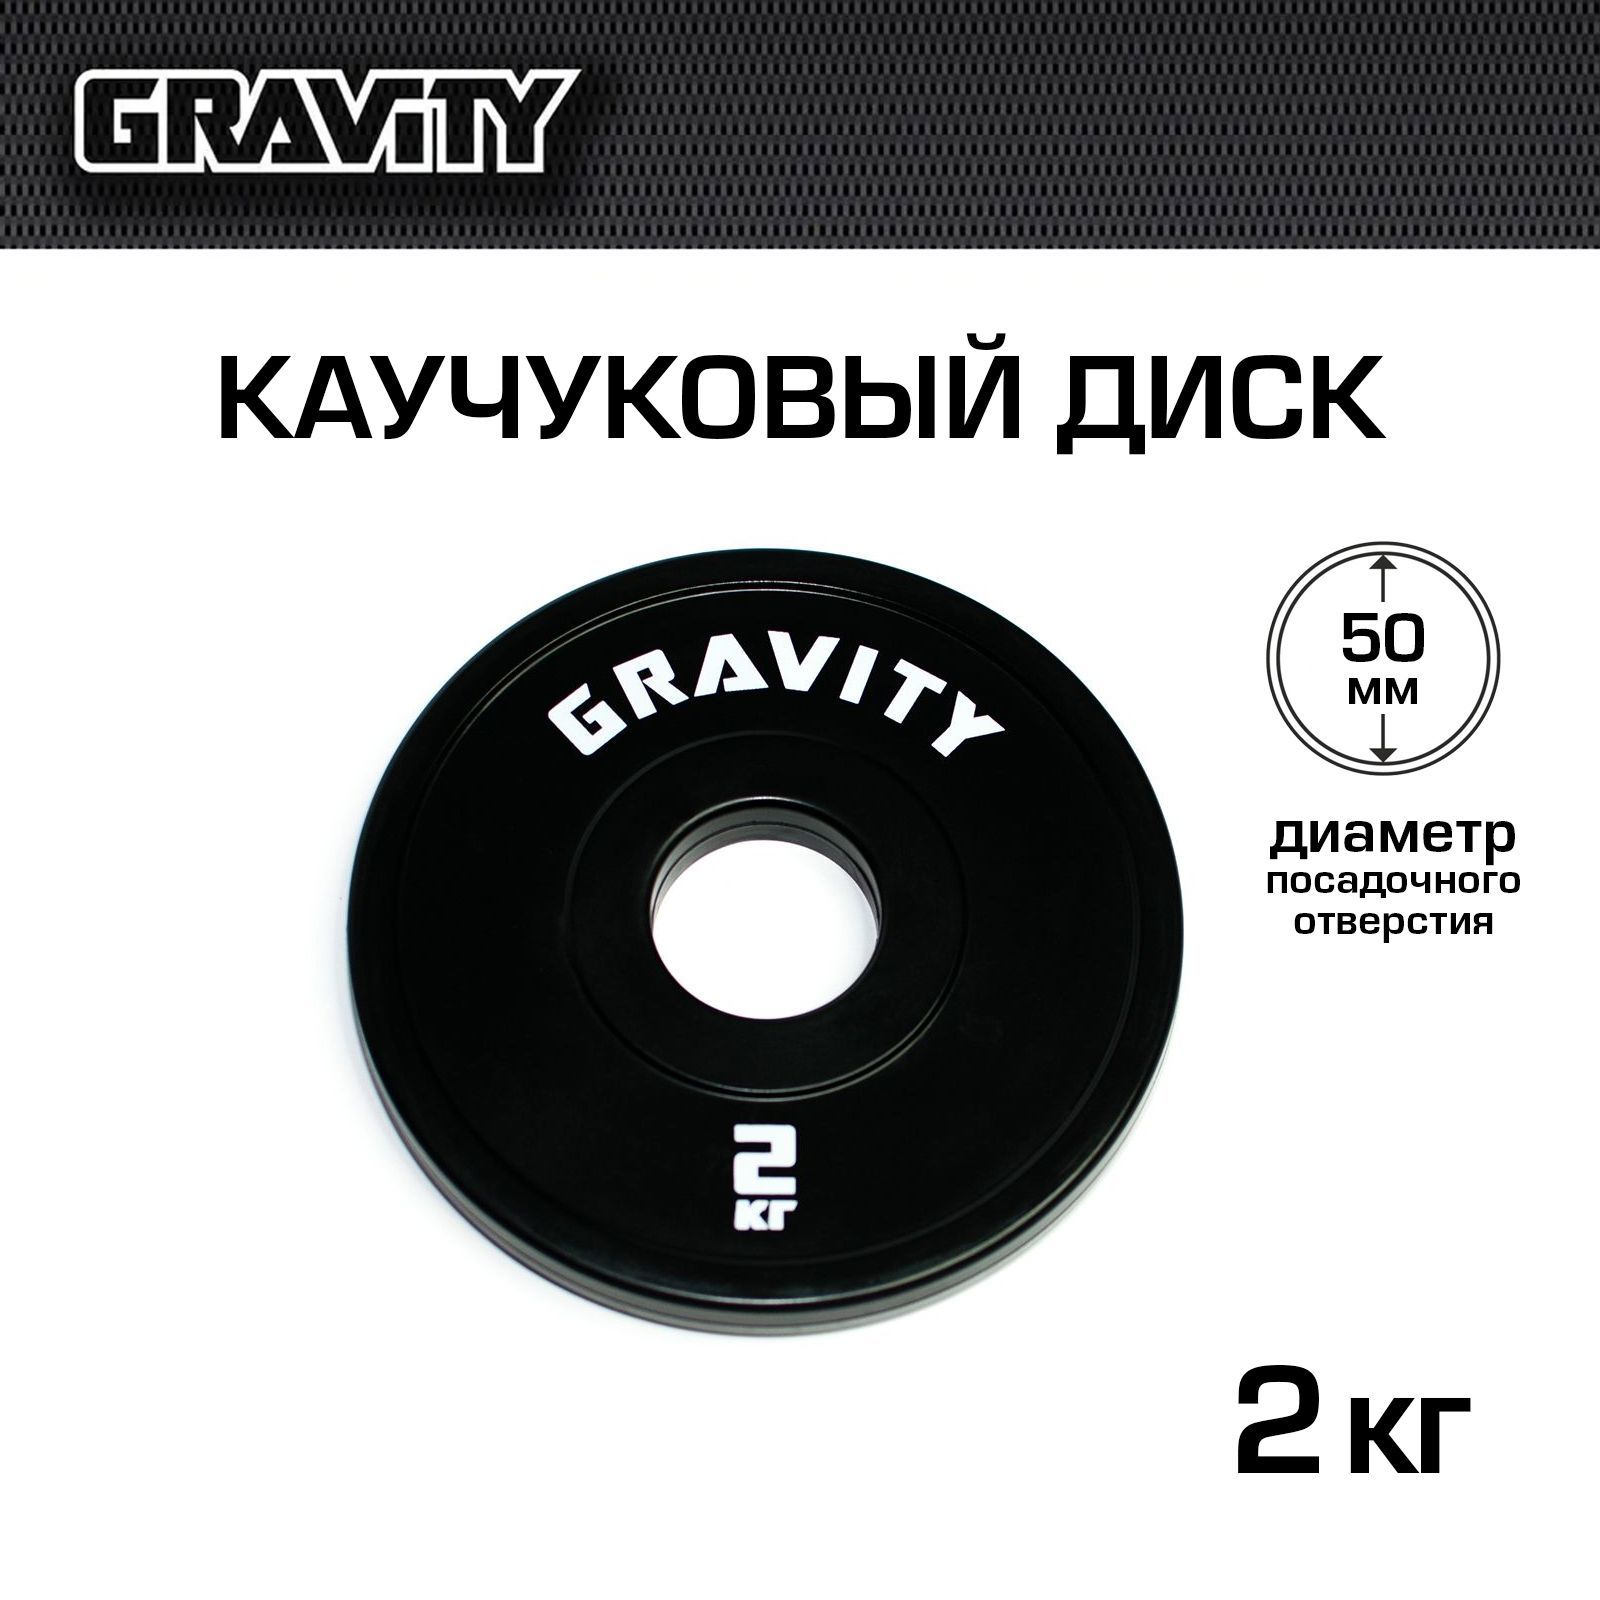 Каучуковый диск Gravity, черный, белый лого, 2 кг